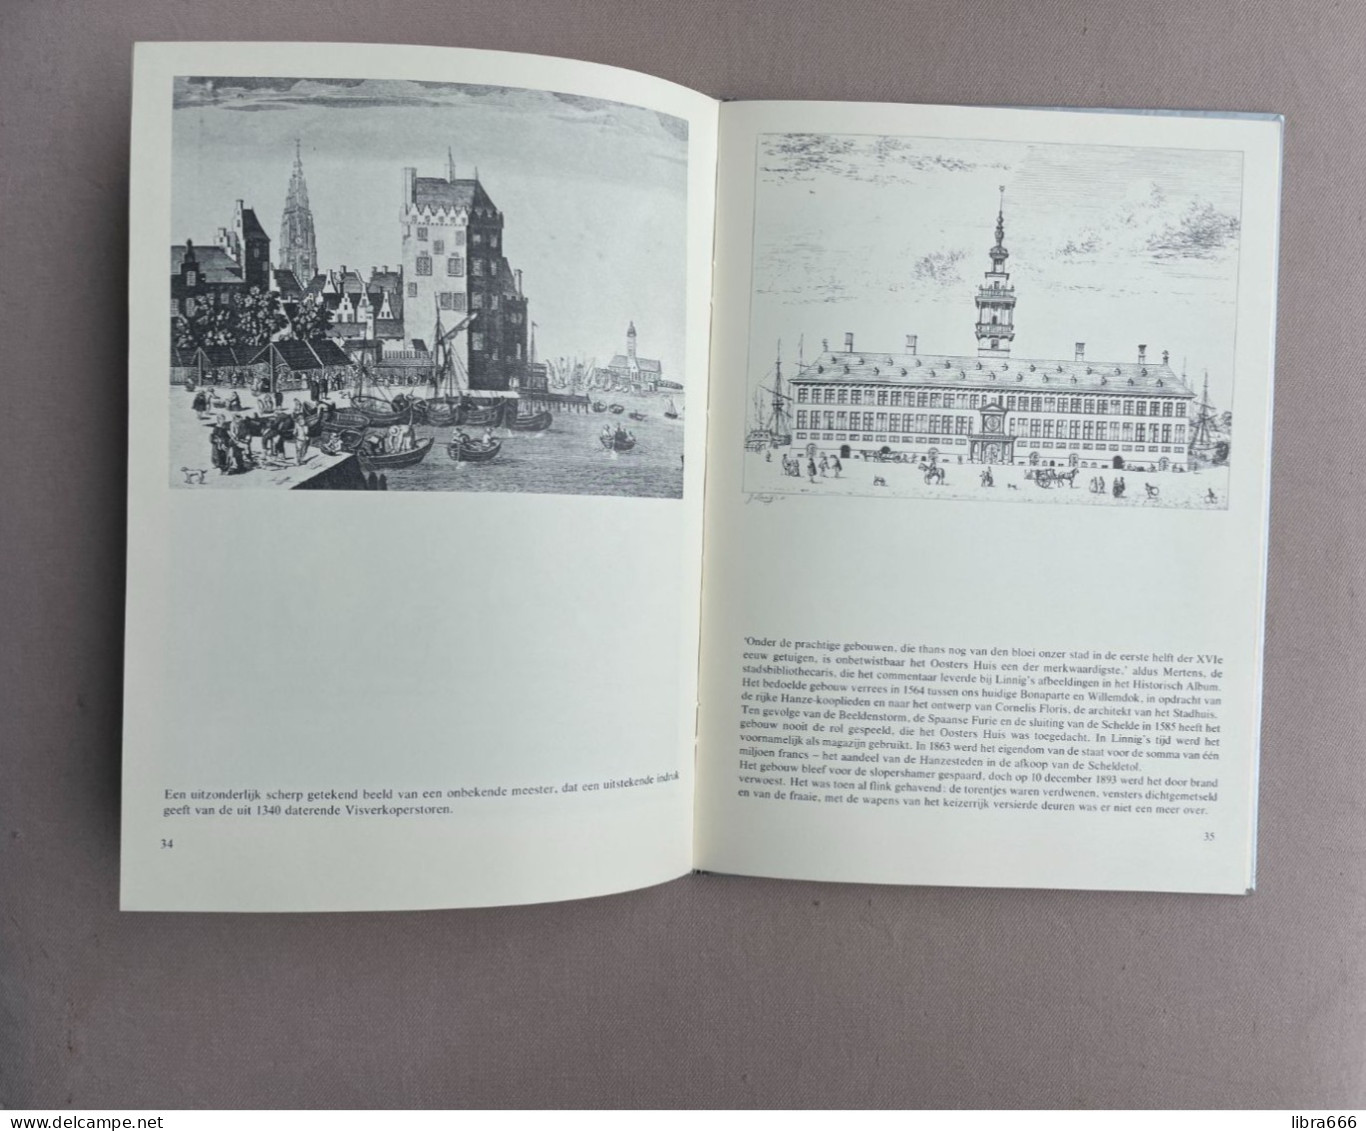 Prentenboek van Oud-Antwerpen - A. Van Hageland - 1979 - 80 pp. - 30 x 22 cm.